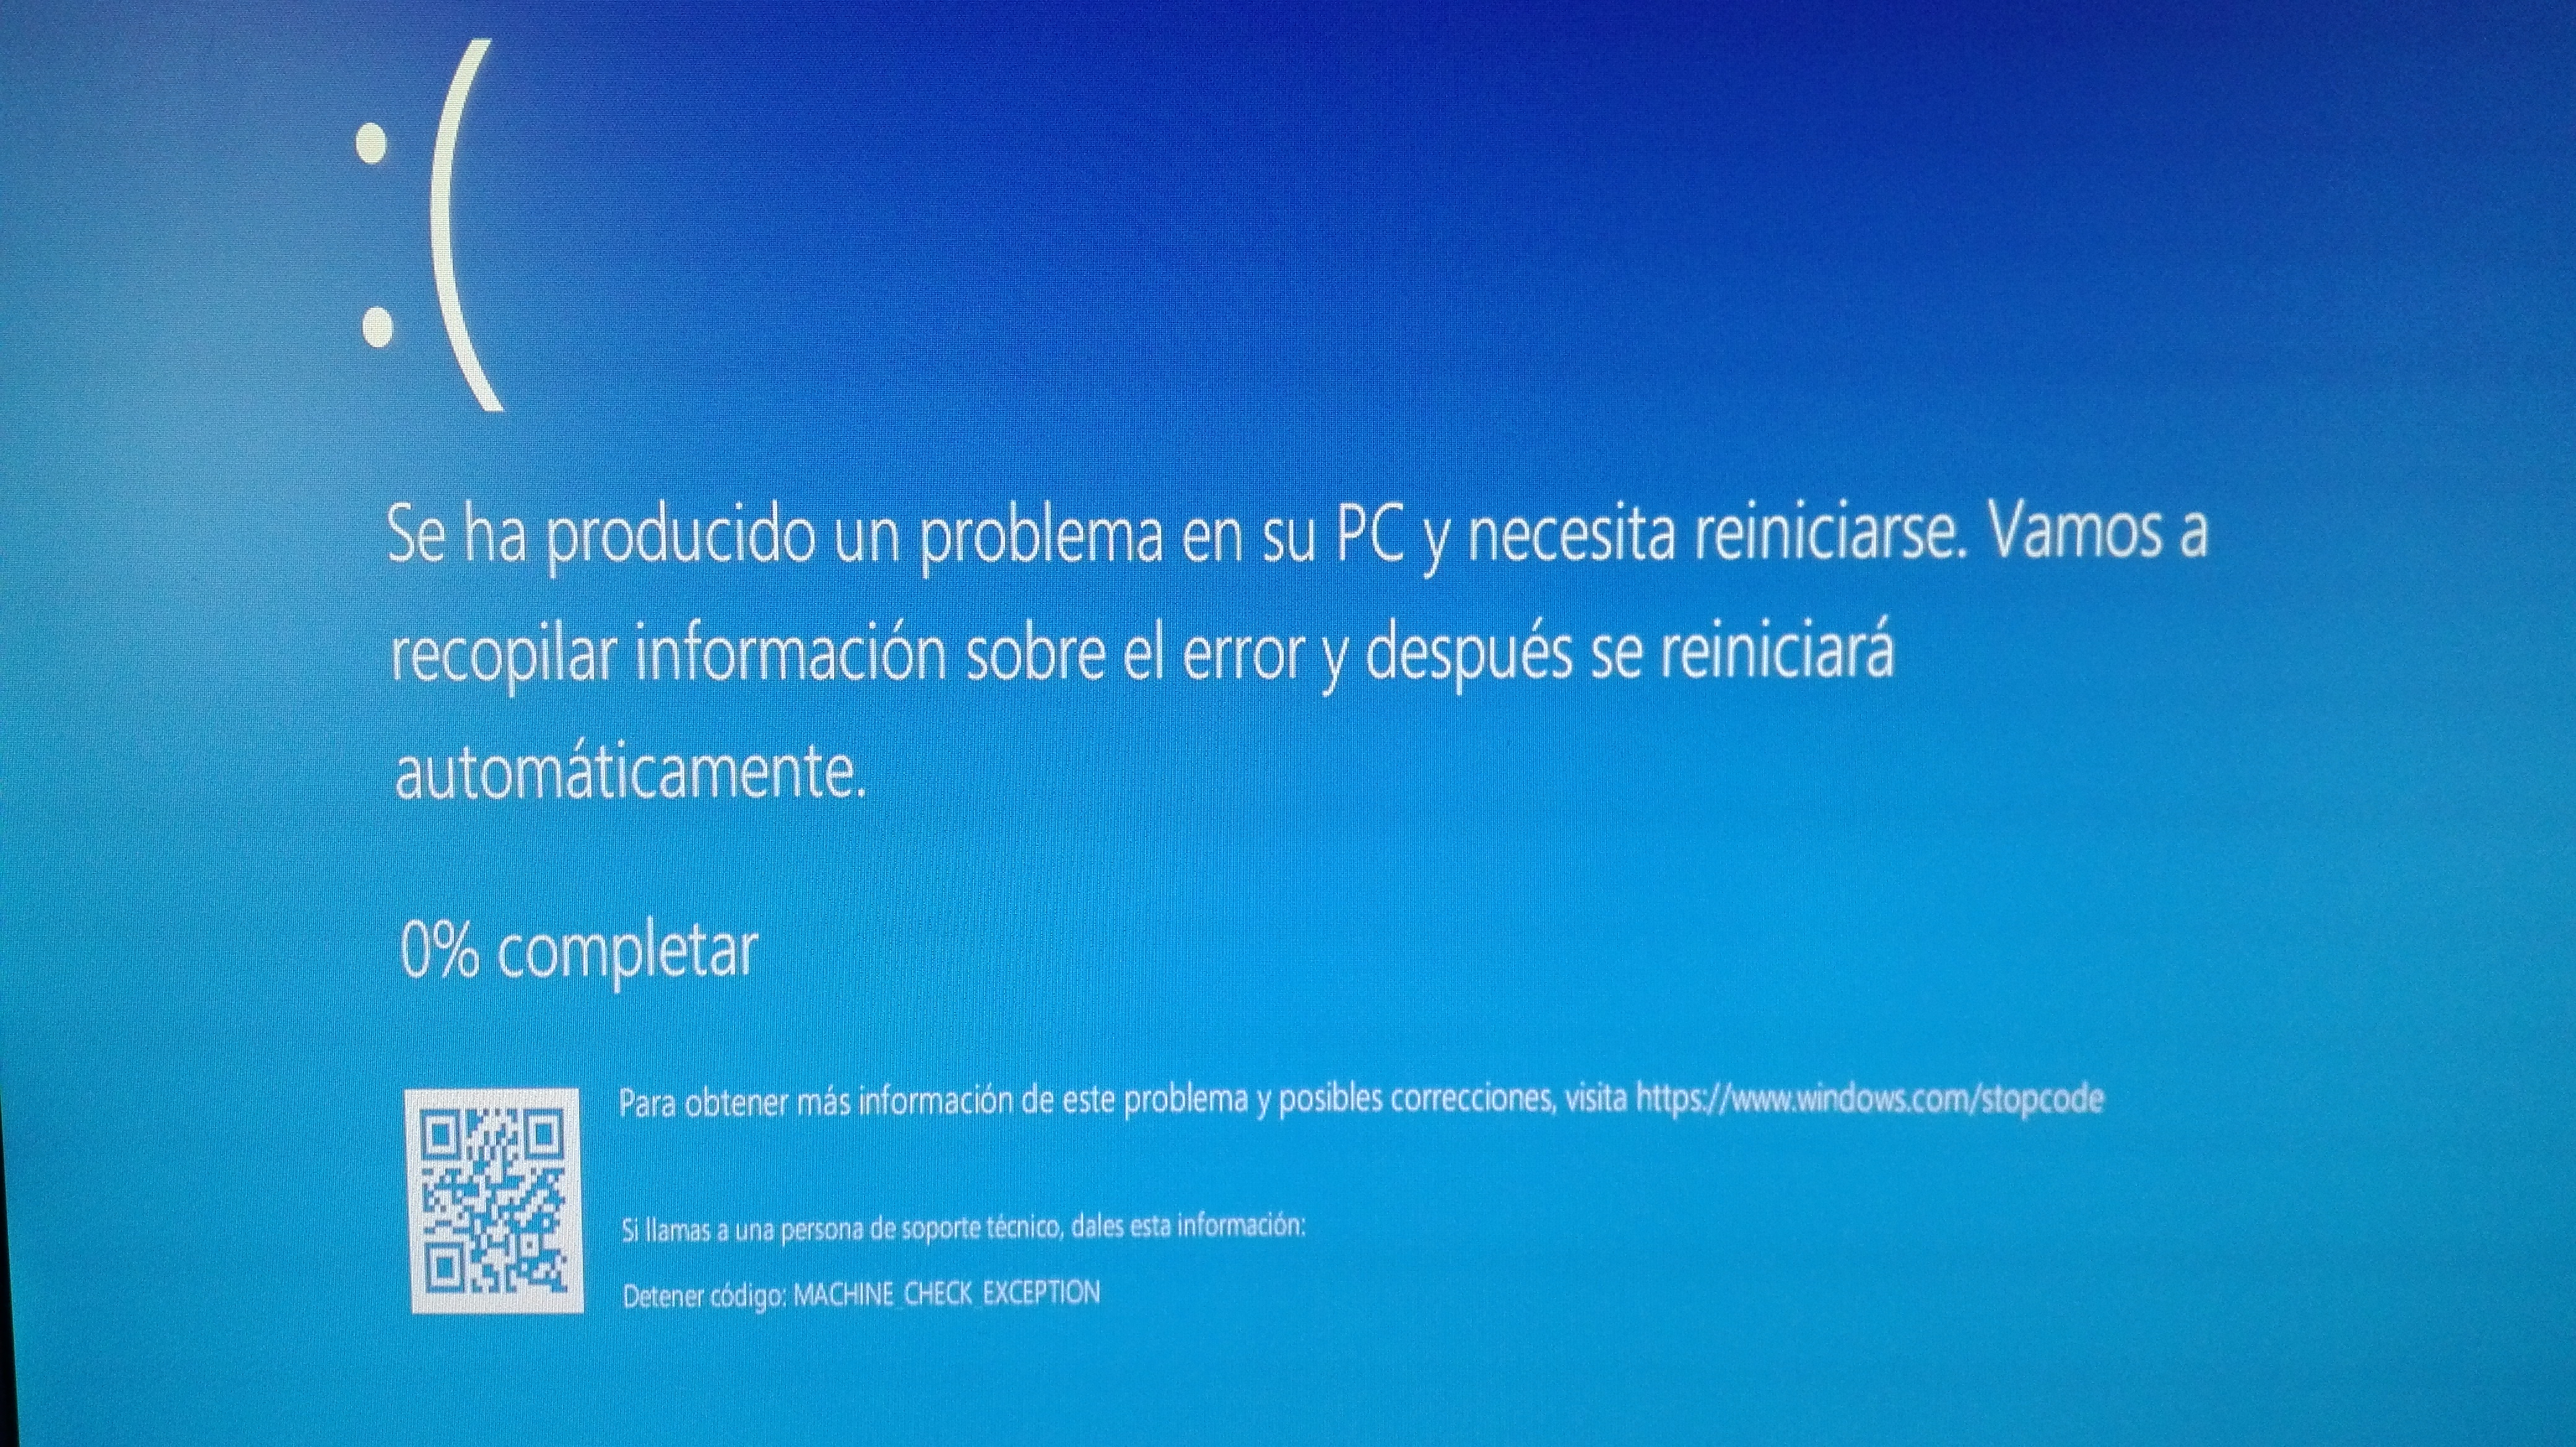 Windows 10 Pantalla Azul Se Ha Producido Un Problema En Su Pc Y